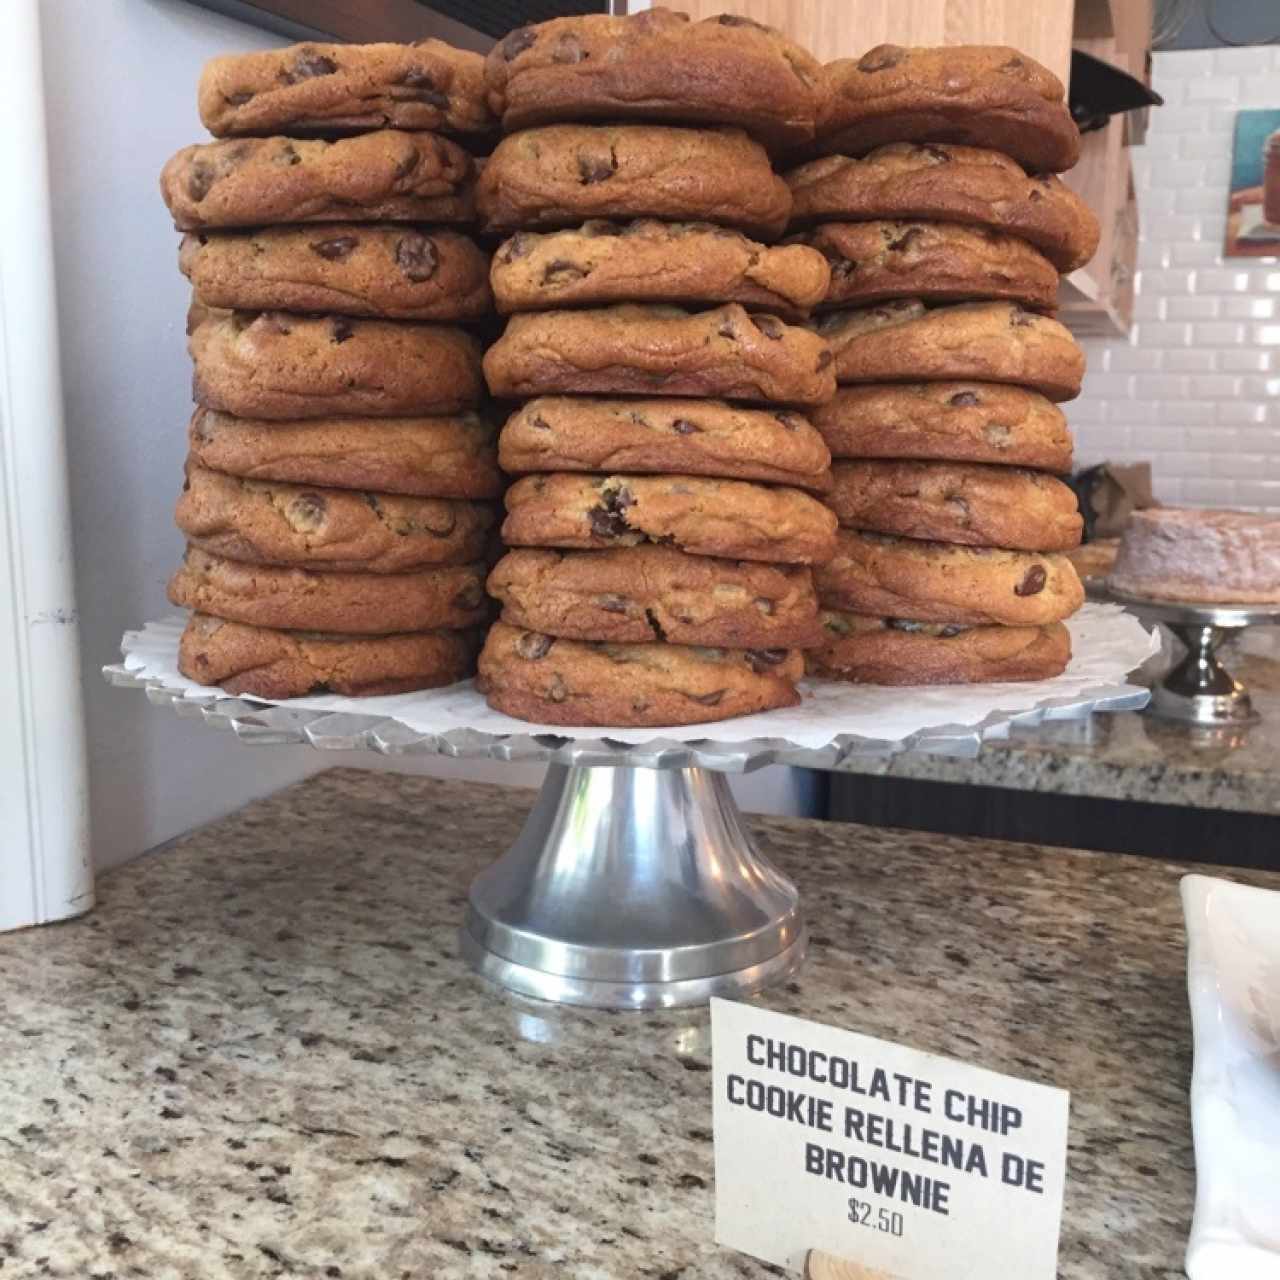 Estas galletas no estan rellenas de brownie